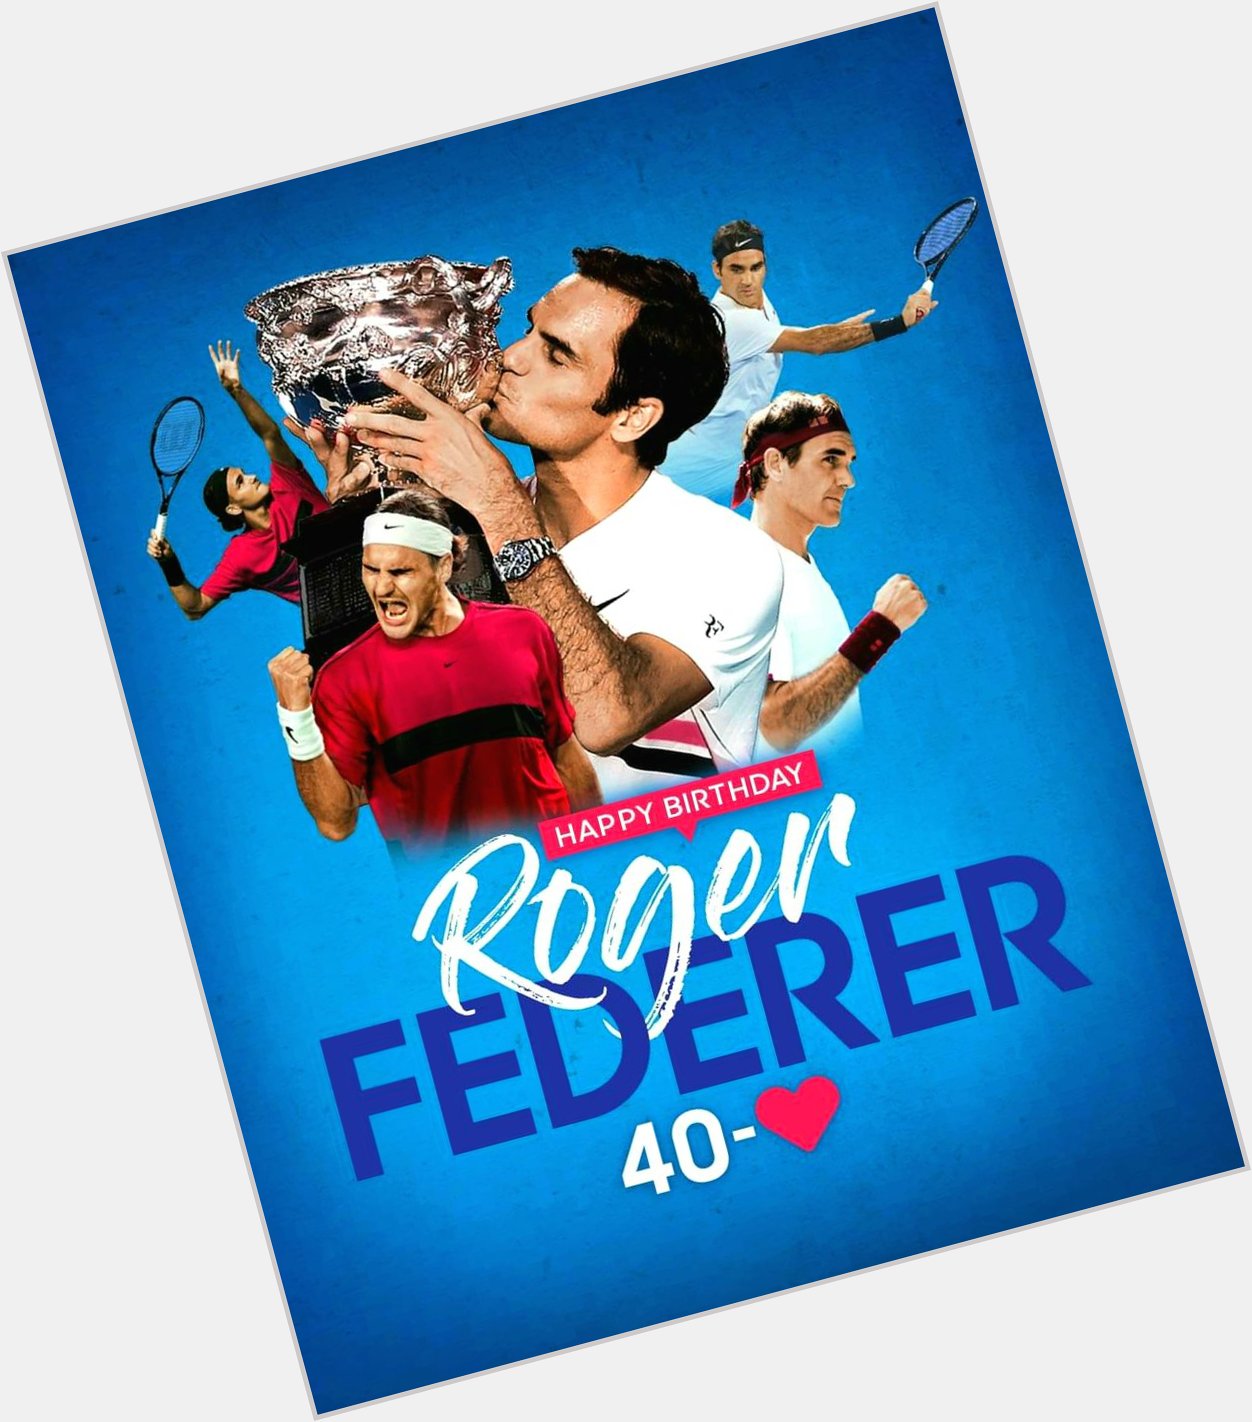 Happy 40th birthday Roger Federer 